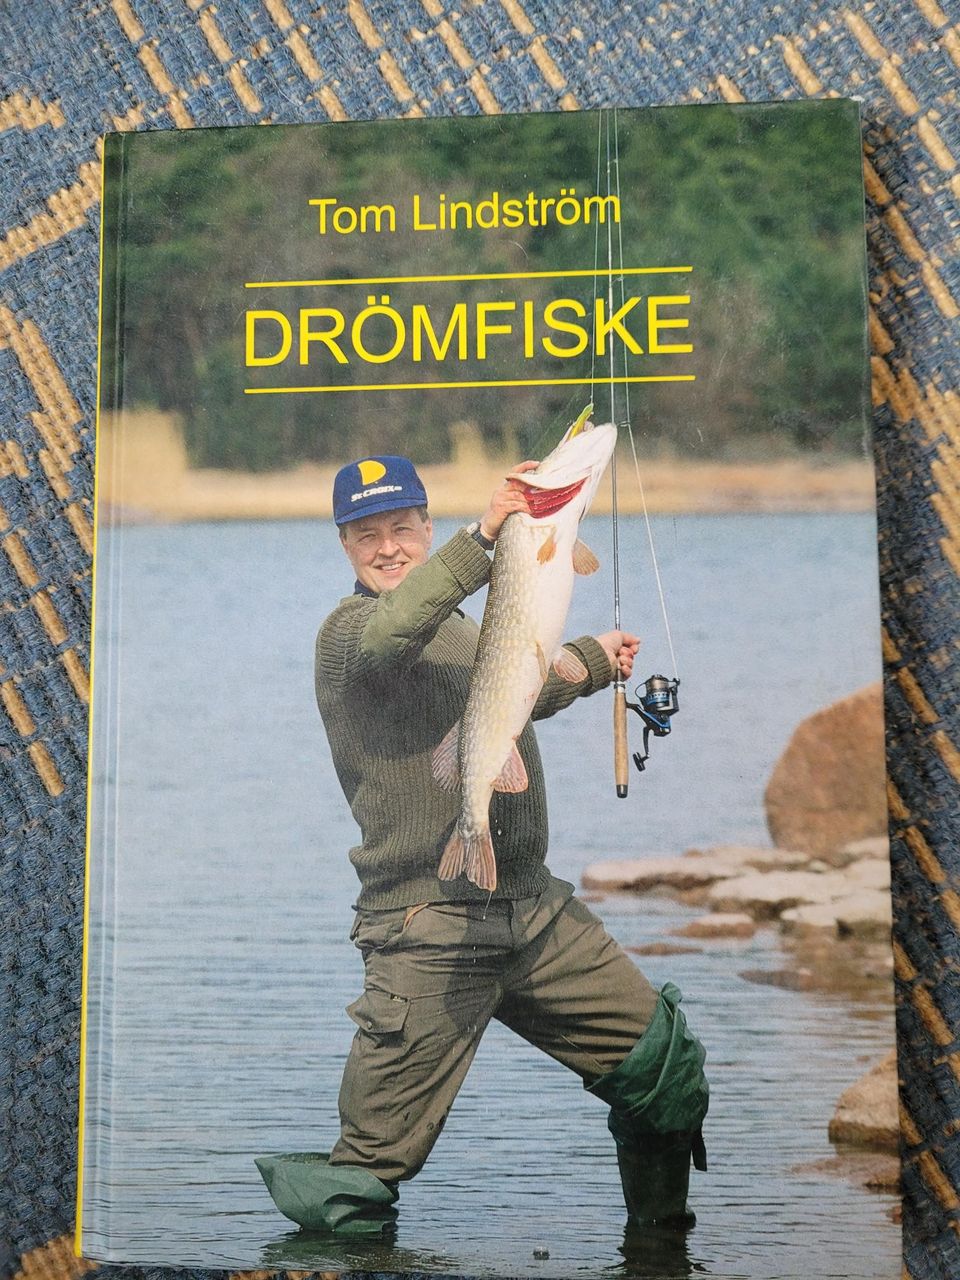 Drömfiske, Tom Lindström, 2000